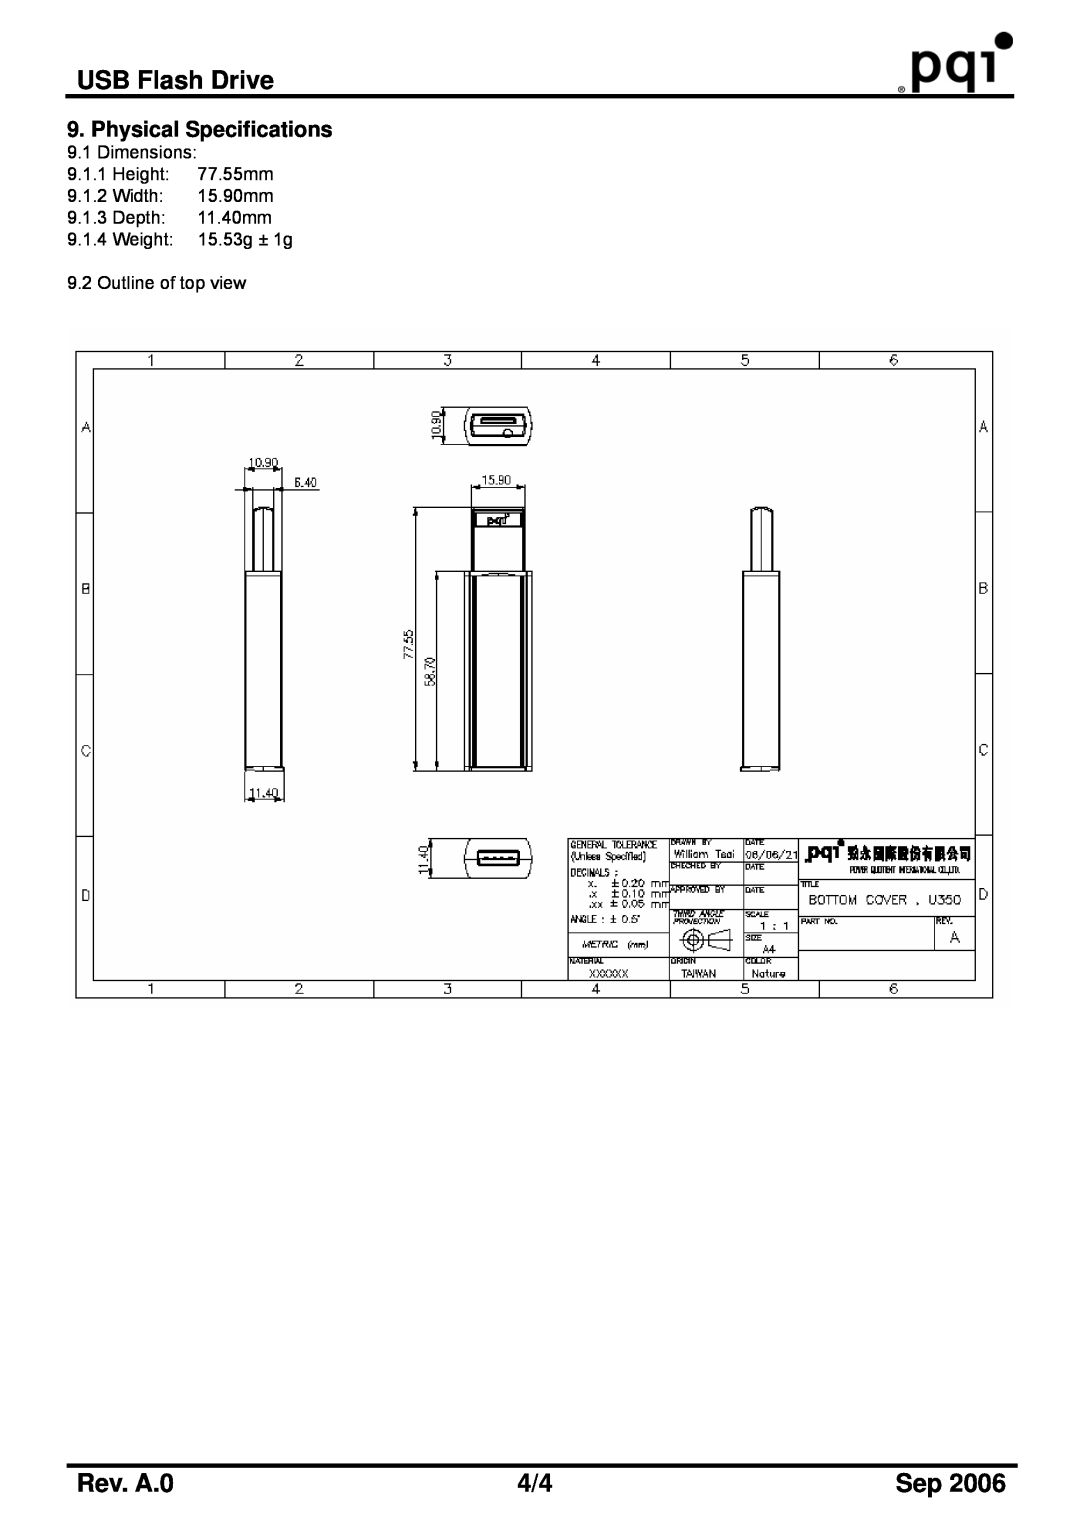 PQI U350H manual USB Flash Drive, Rev. A.0, Dimensions 9.1.1 Height 77.55mm 9.1.2 Width 15.90mm 